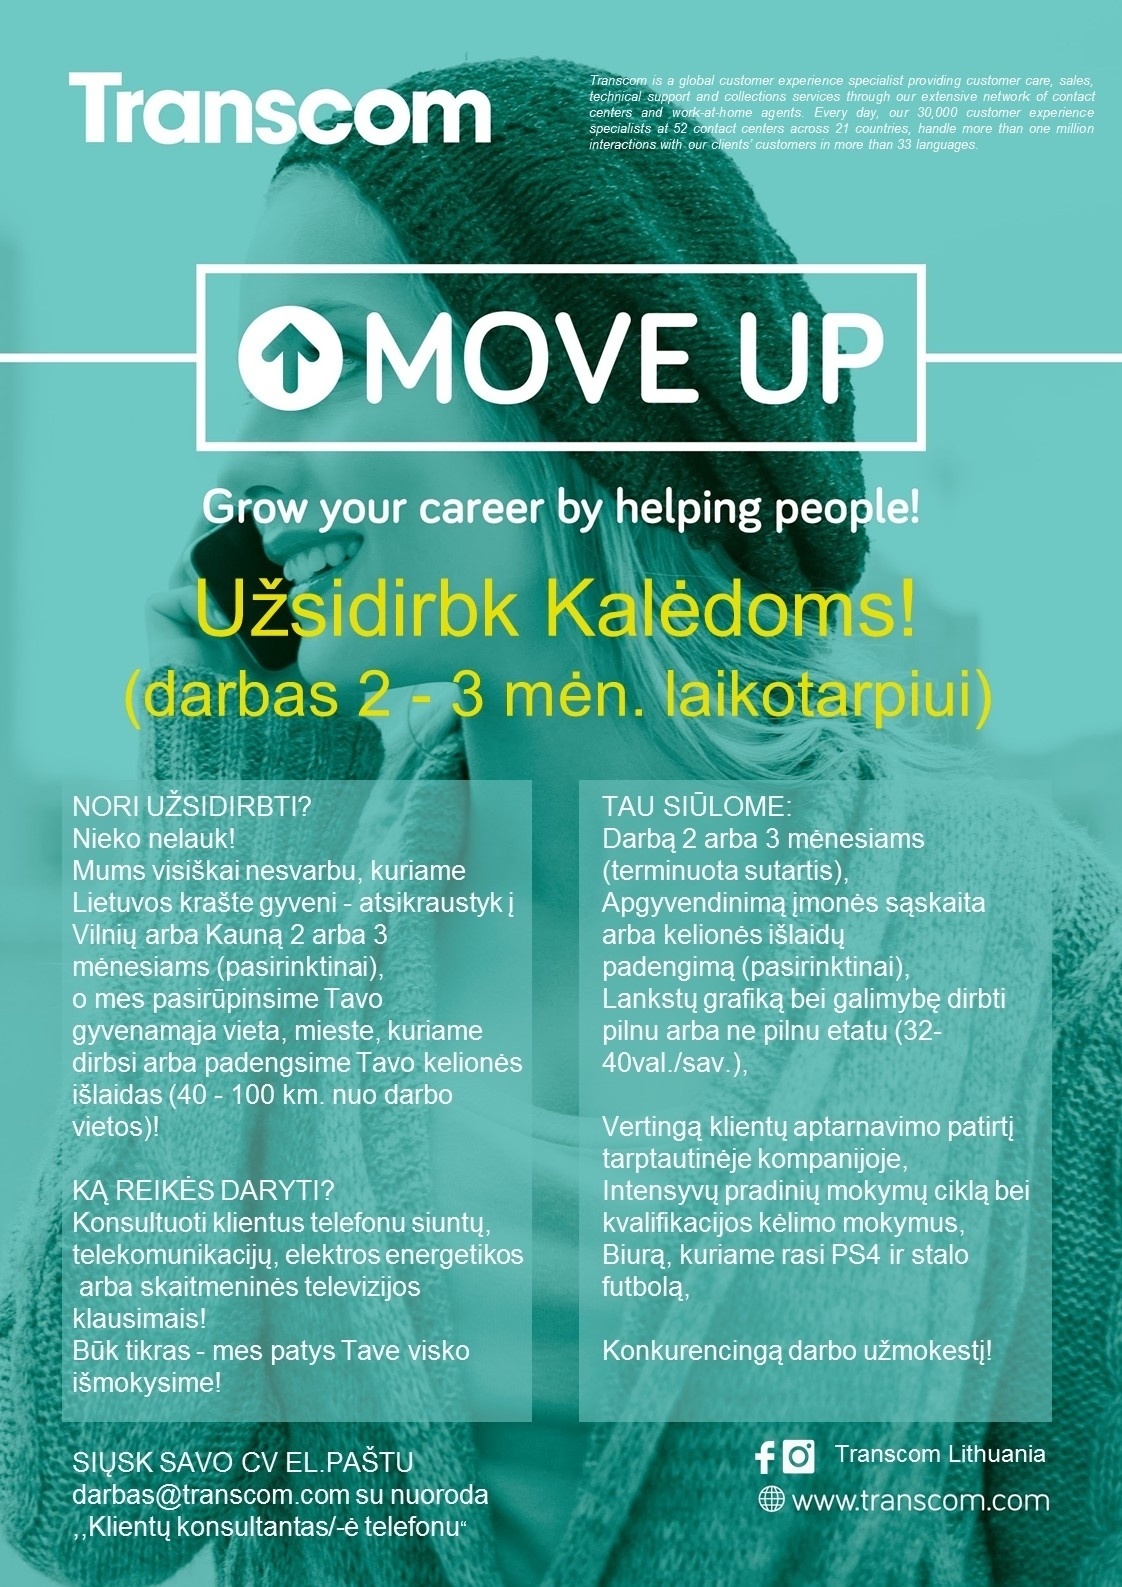 Transcom Worldwide Vilnius, UAB - pasiūlymas su apgyvendinimu 2-3 mėn. Vilniuje arba Kaune Užsidirbk Kalėdoms! 